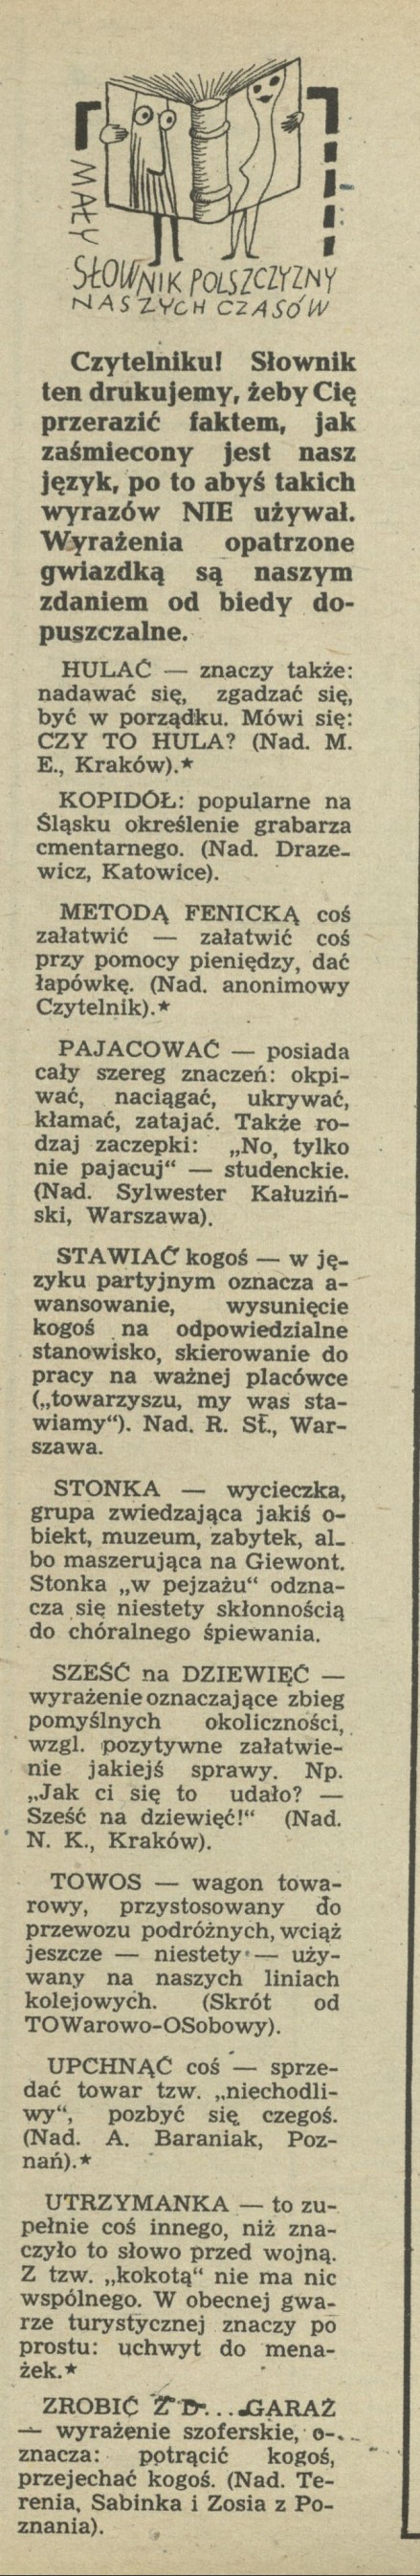 Mały słownik polszczyzny naszych czasów